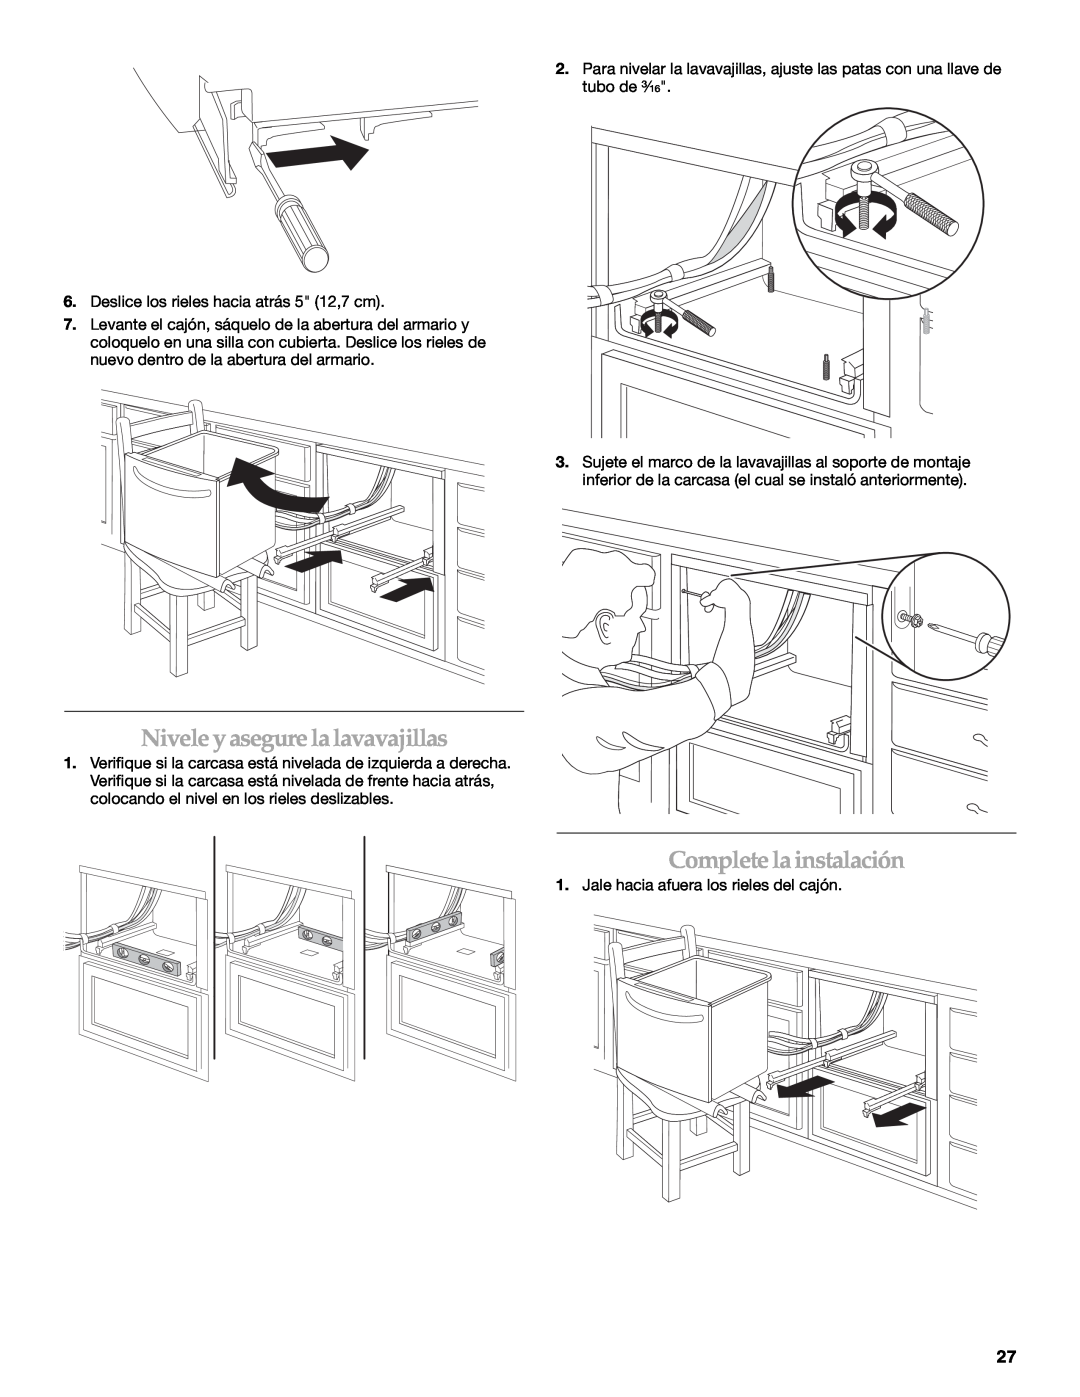 KitchenAid KUDD03STBL installation instructions Nivele y asegure la lavavajillas, Complete la instalación 